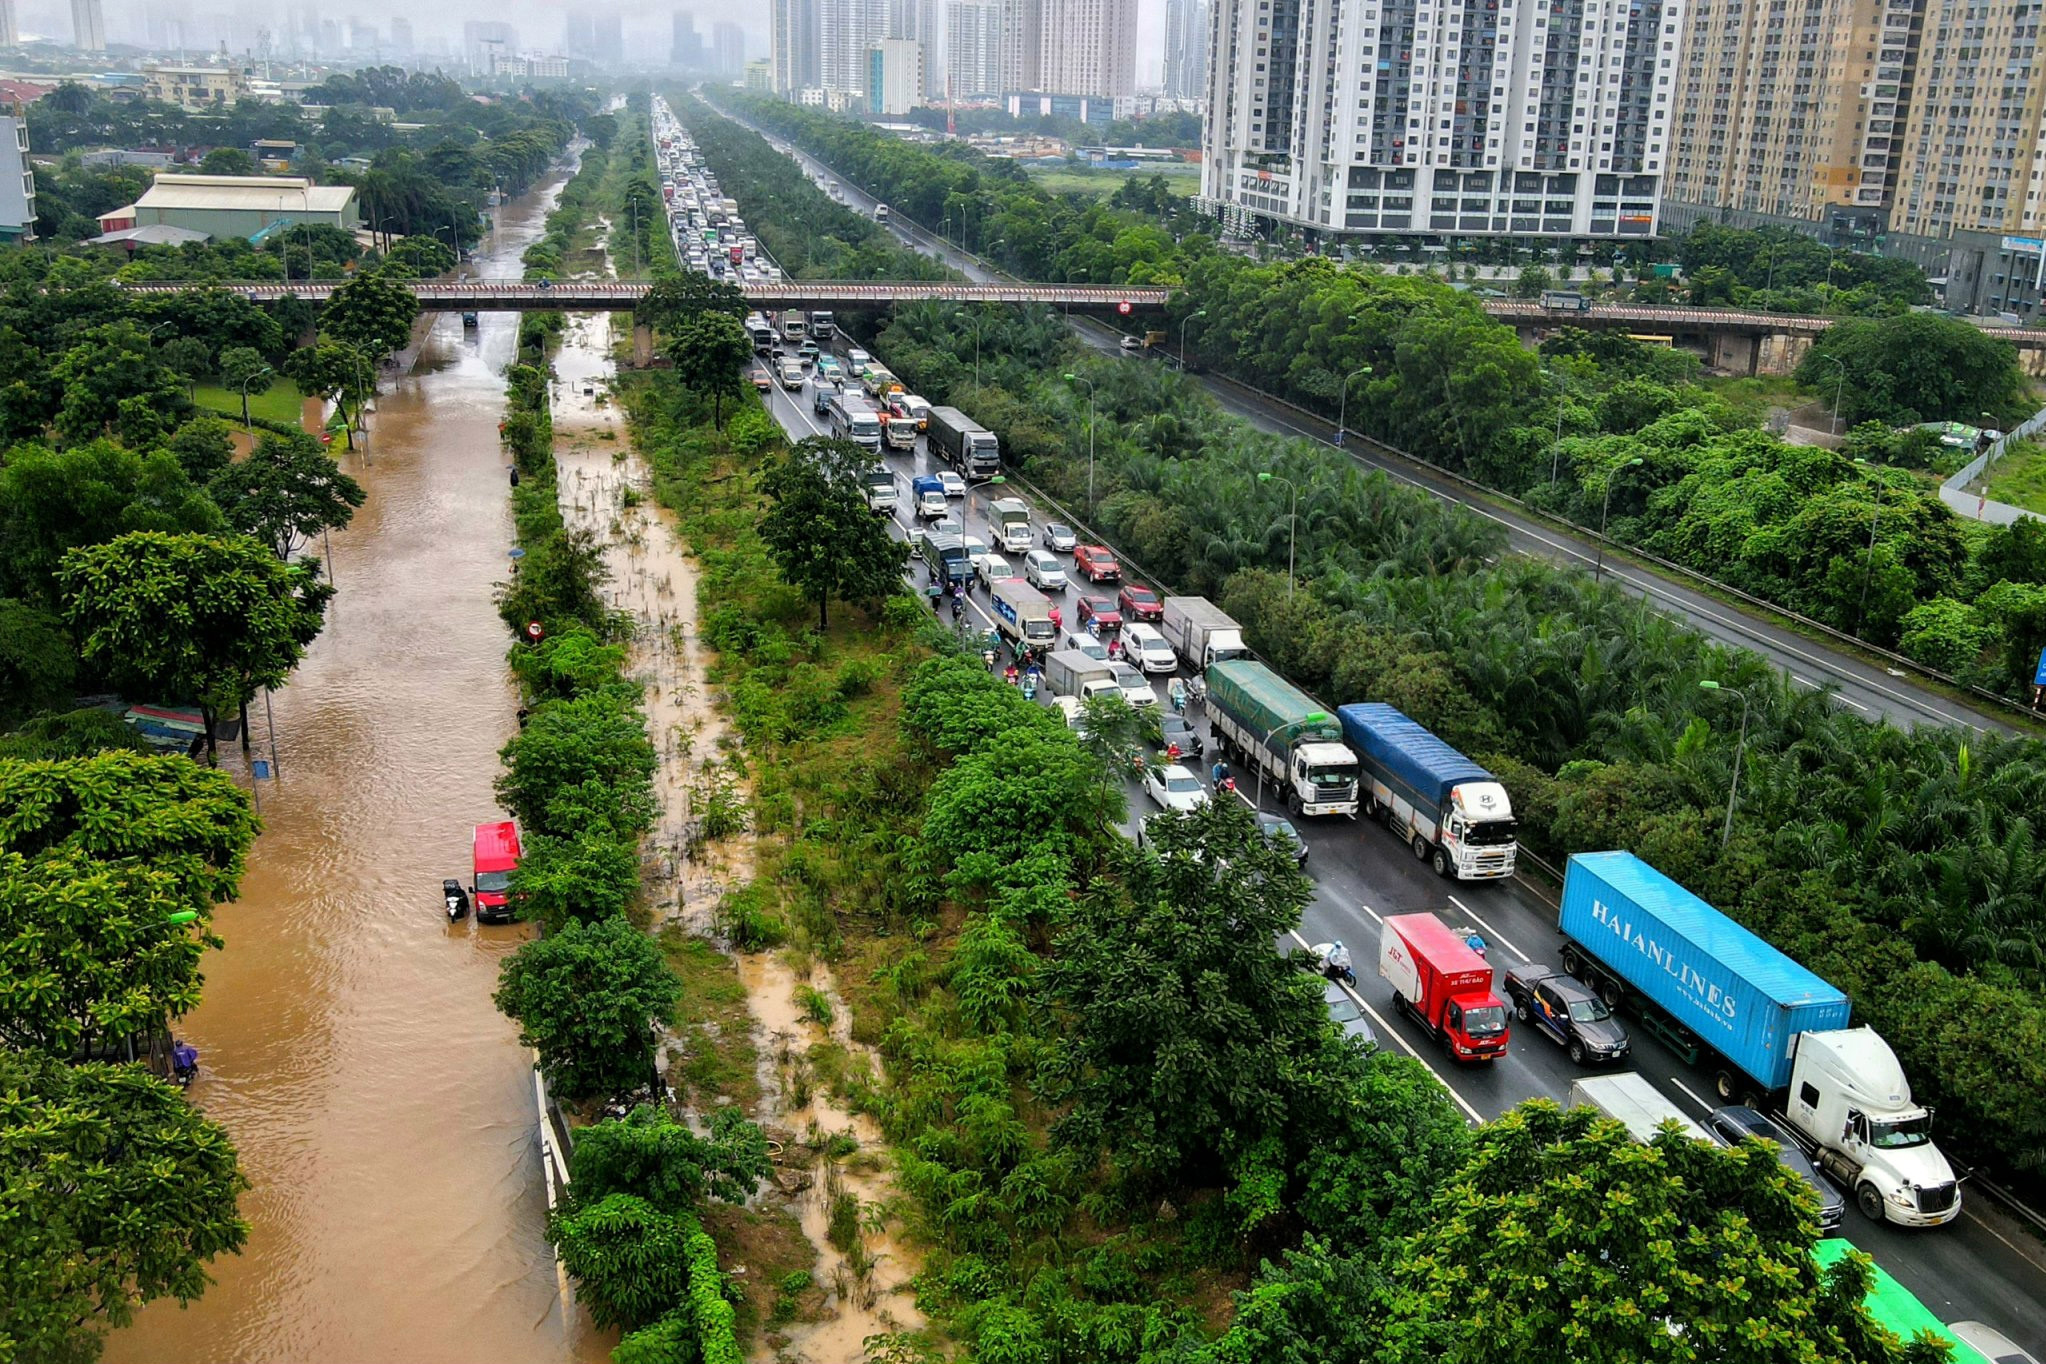 Buổi chiều sau mưa, đường gom đại lộ Thăng Long vẫn chìm trong biển nước